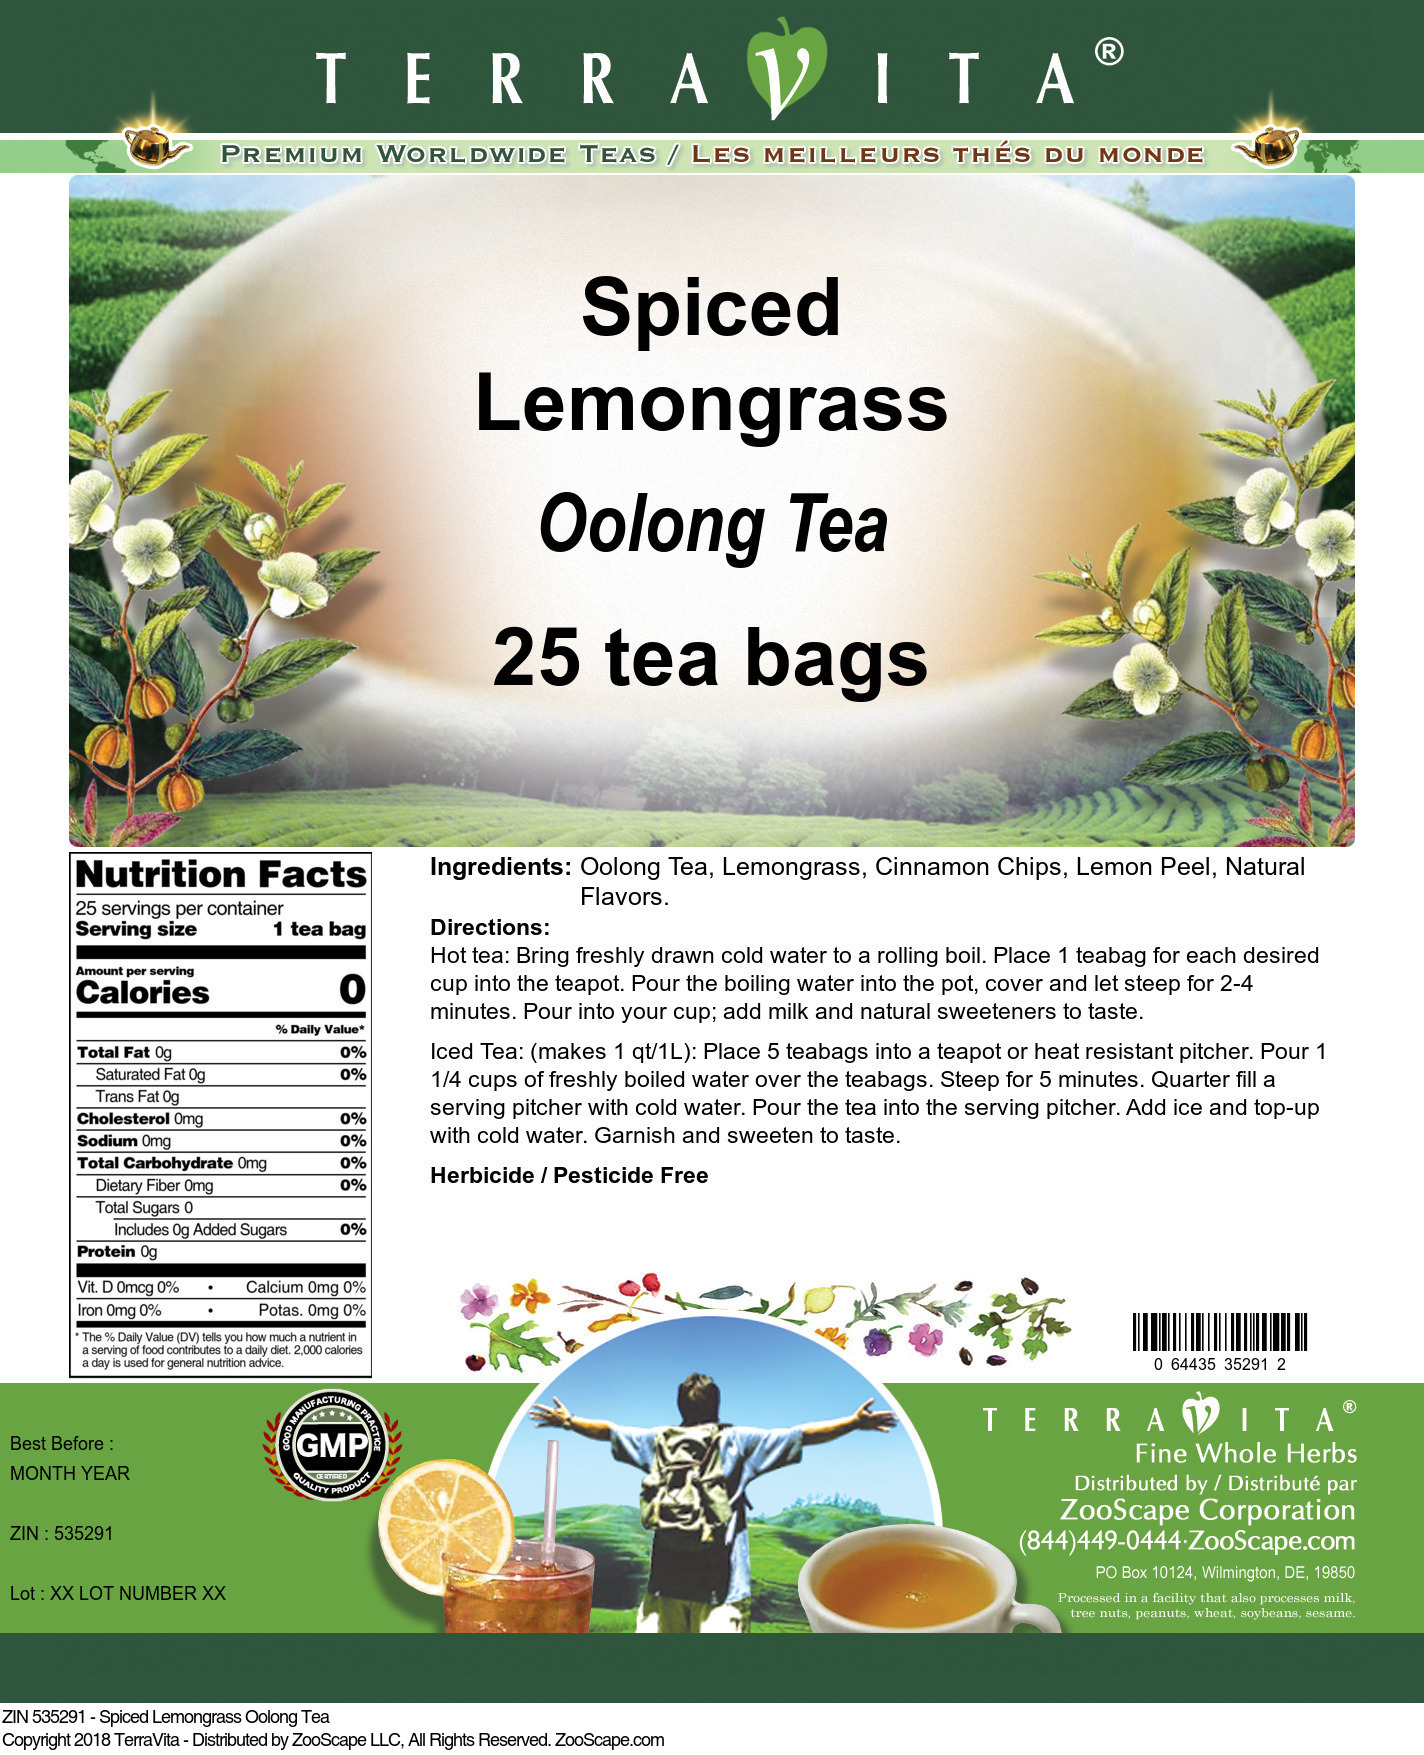 Spiced Lemongrass Oolong Tea - Label